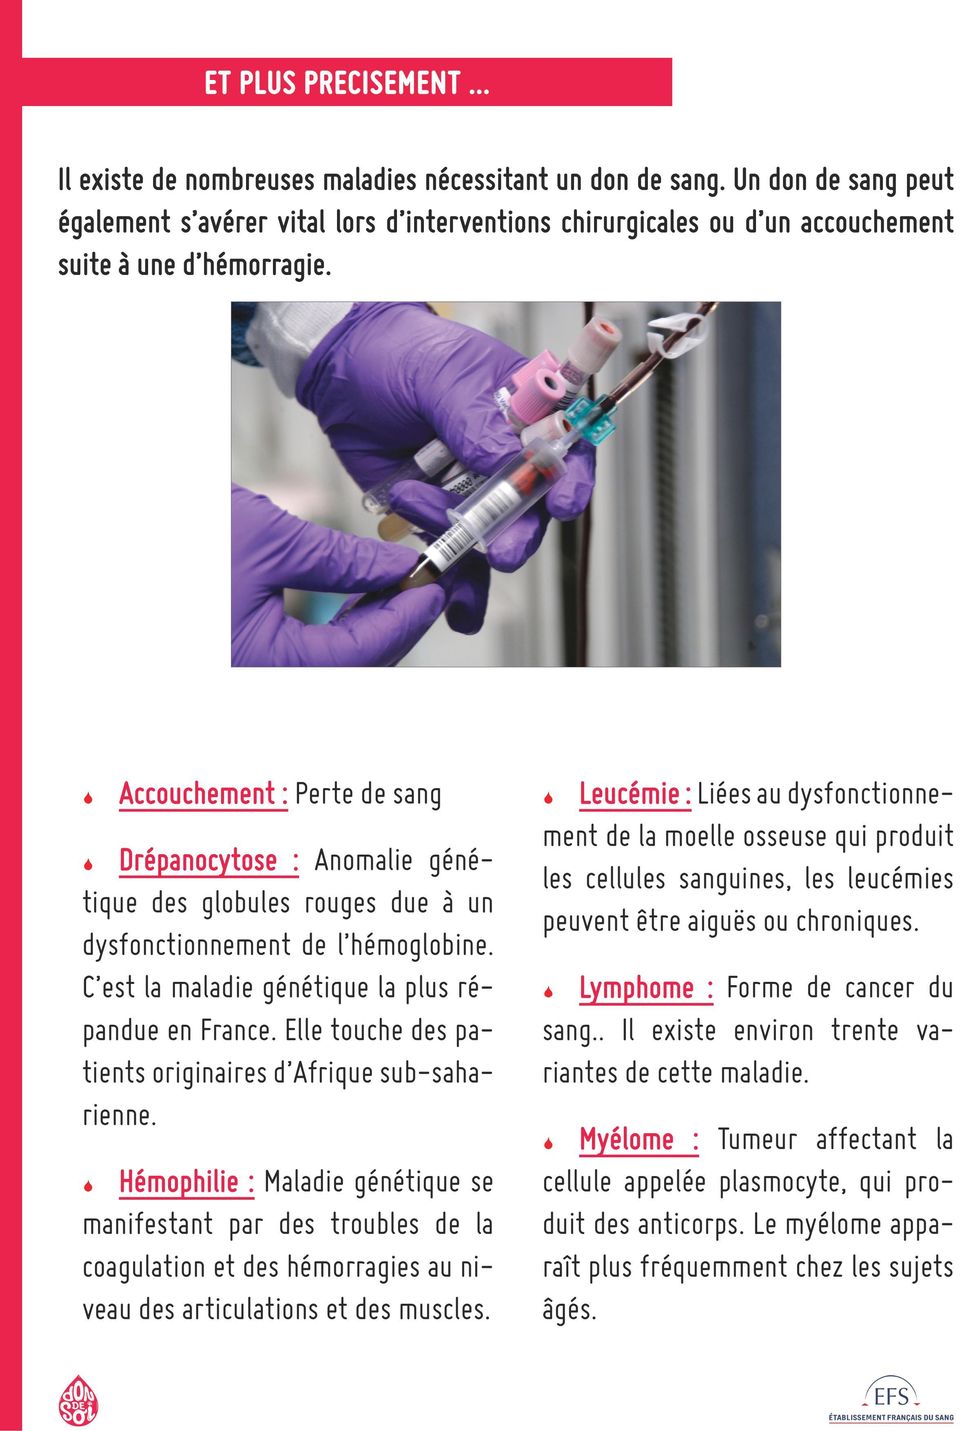 Accouchement : Perte de sang Drépanocytose : Anomalie génétique des globules rouges due à un dysfonctionnement de l hémoglobine. C est la maladie génétique la plus répandue en France.